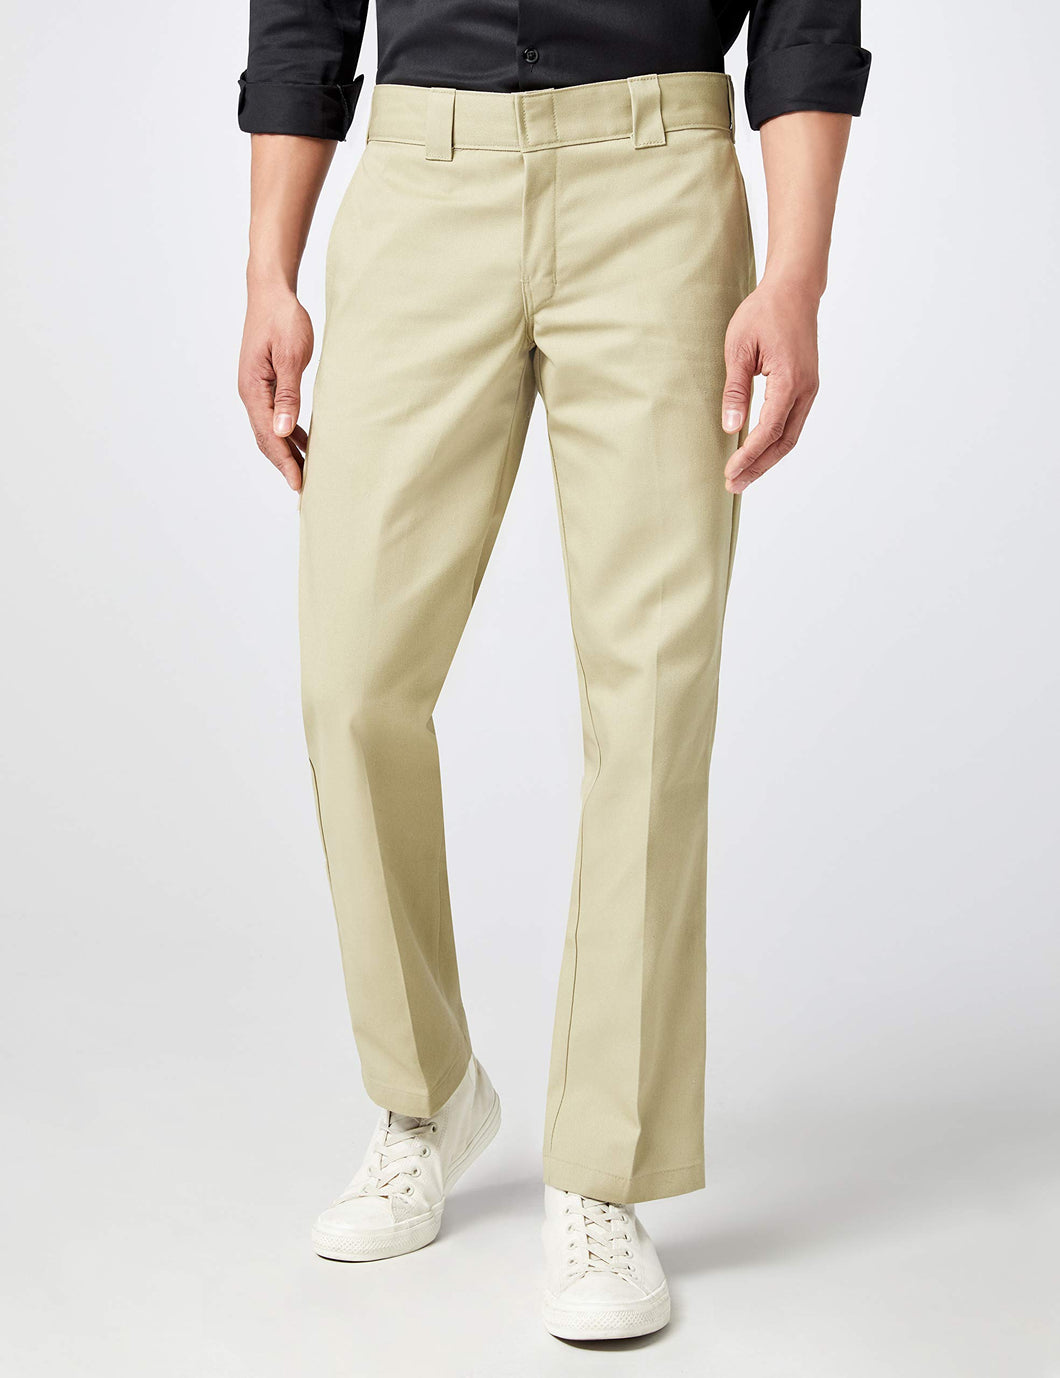 Men's Slim Straight-Fit Work Pants